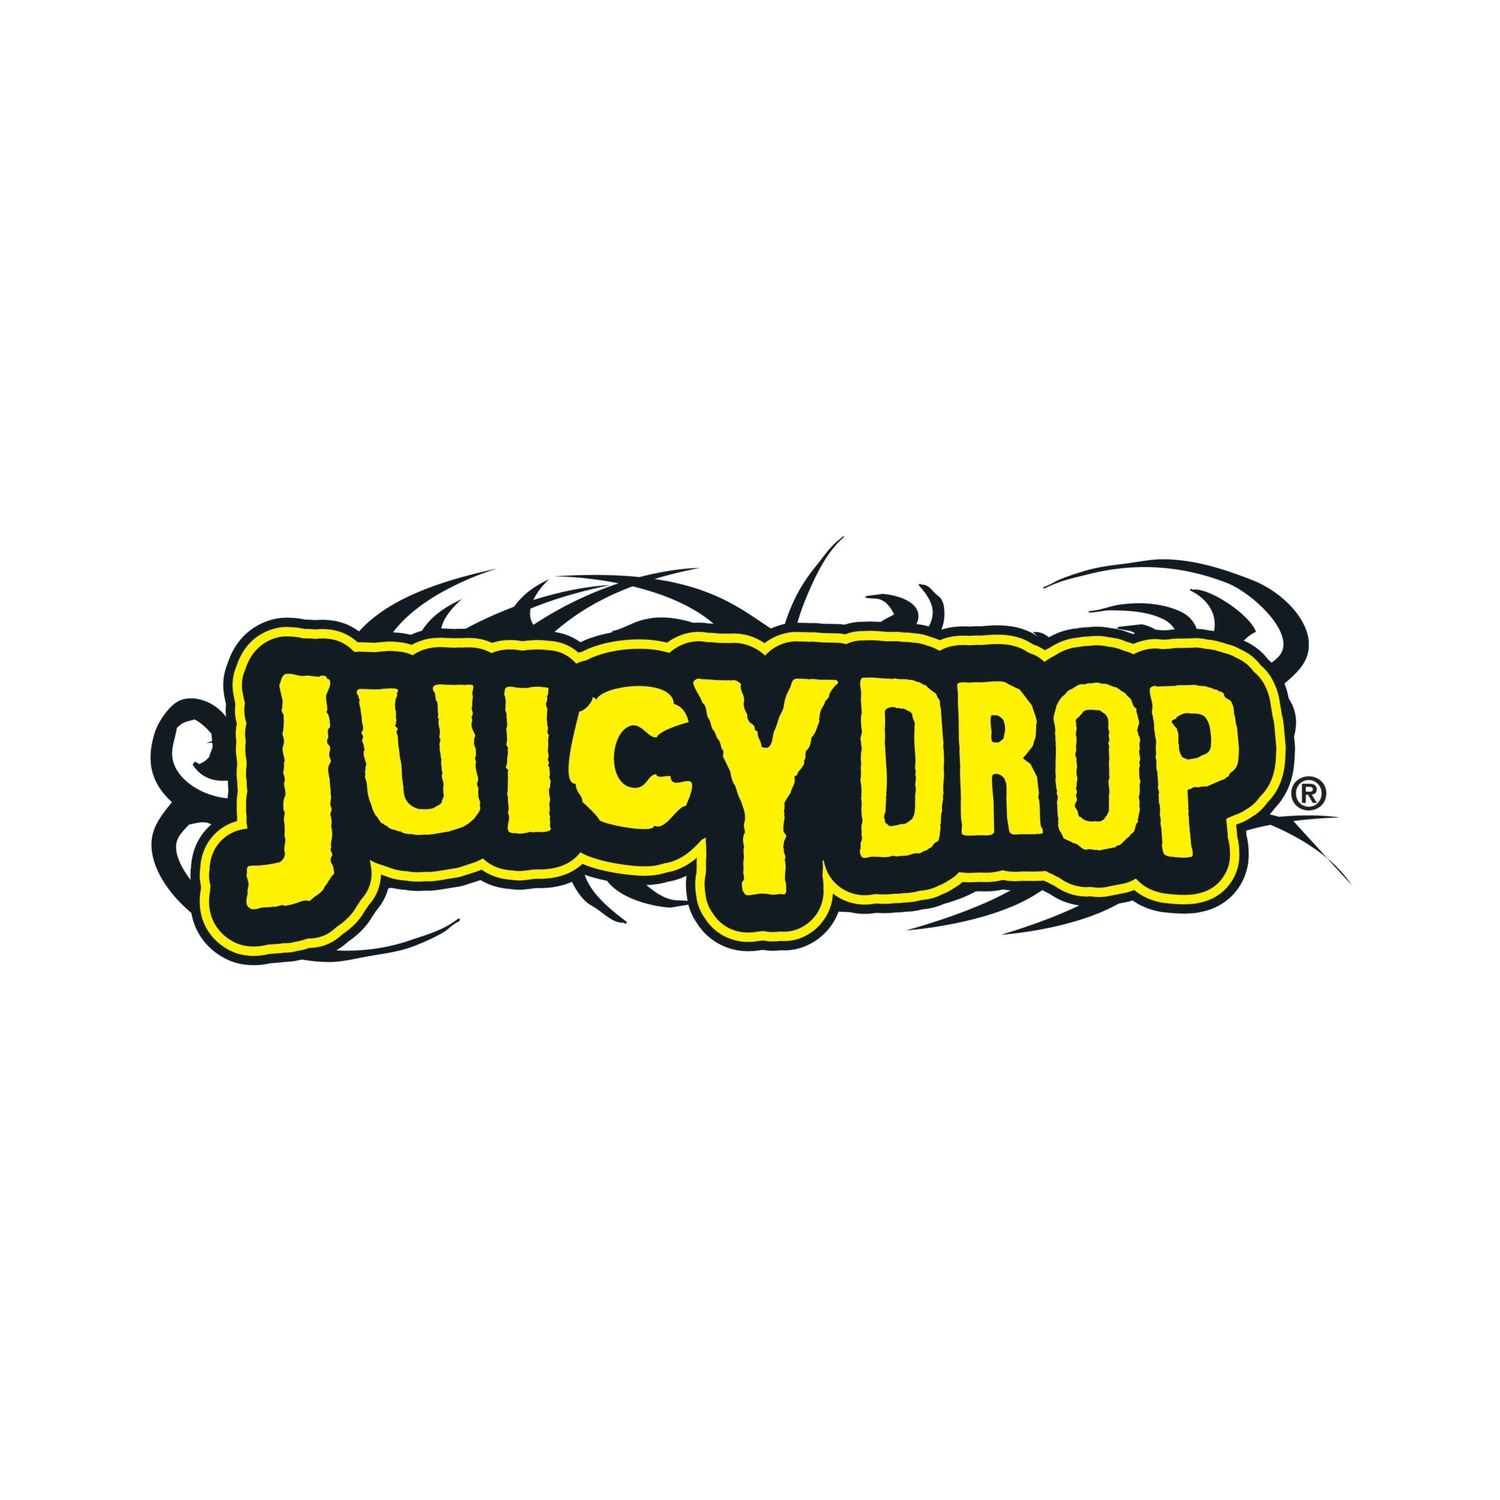 Juicy Drop